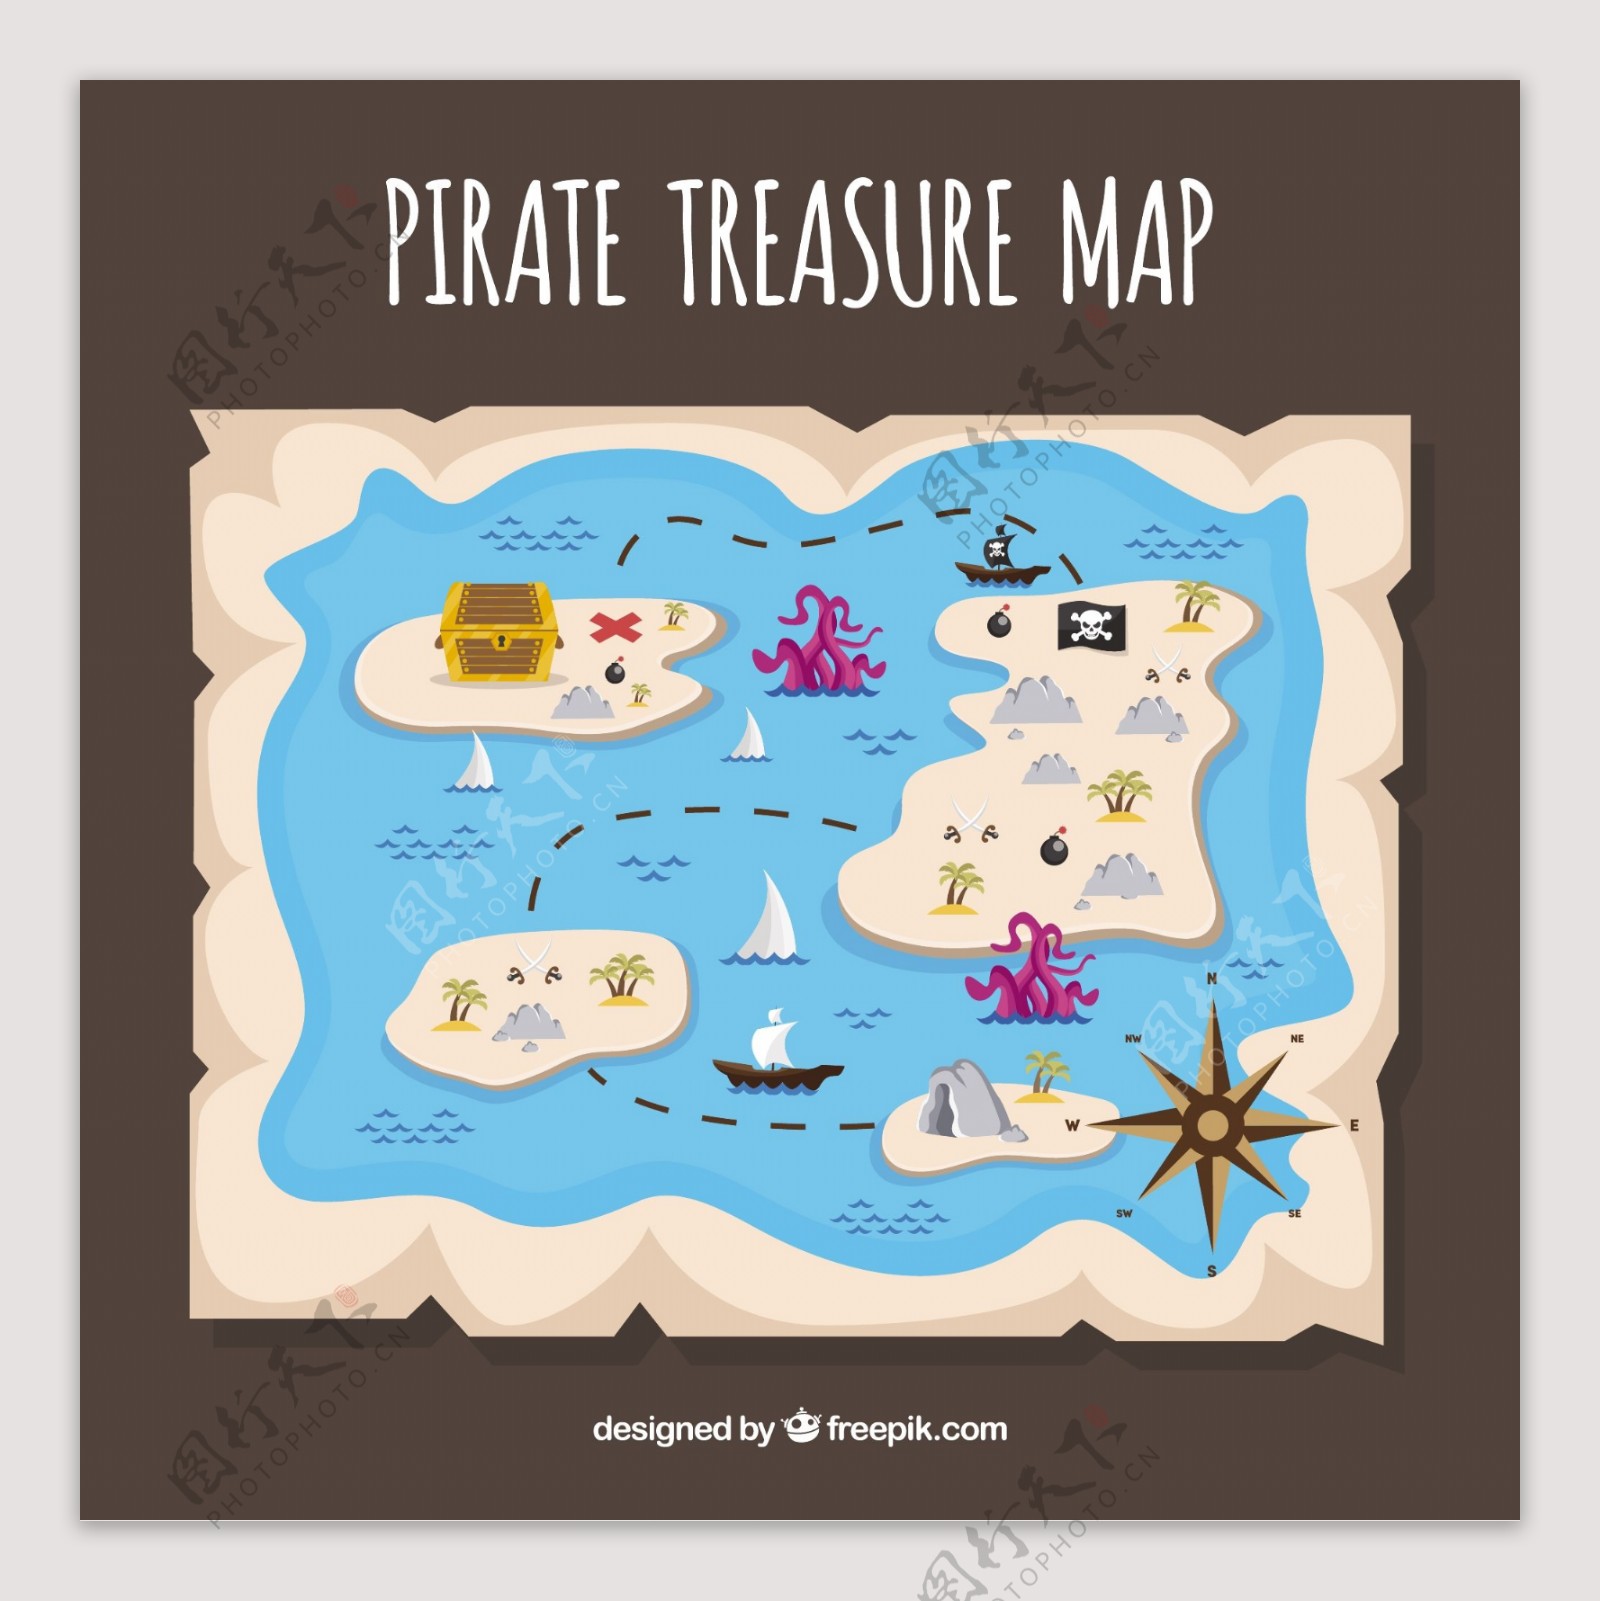 几个岛屿的海盗藏宝图